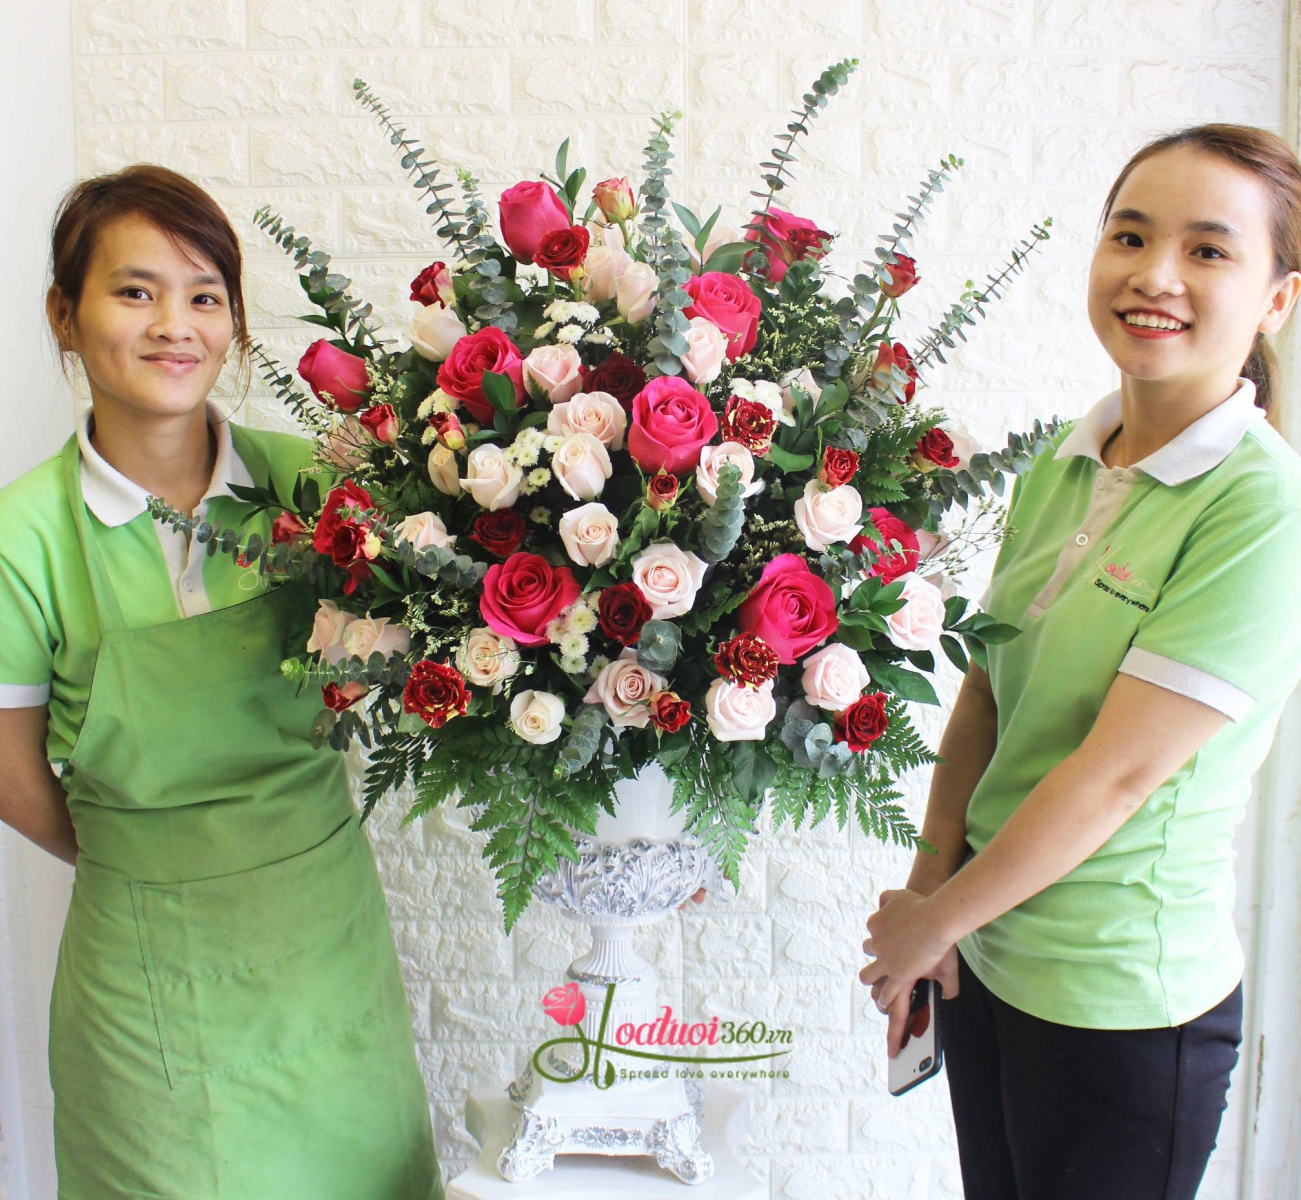 Bình hoa hồng đẹp lộng lẫy tại cửa hàng hoa đường Vĩnh Viễn chuẩn bị giao cho khách